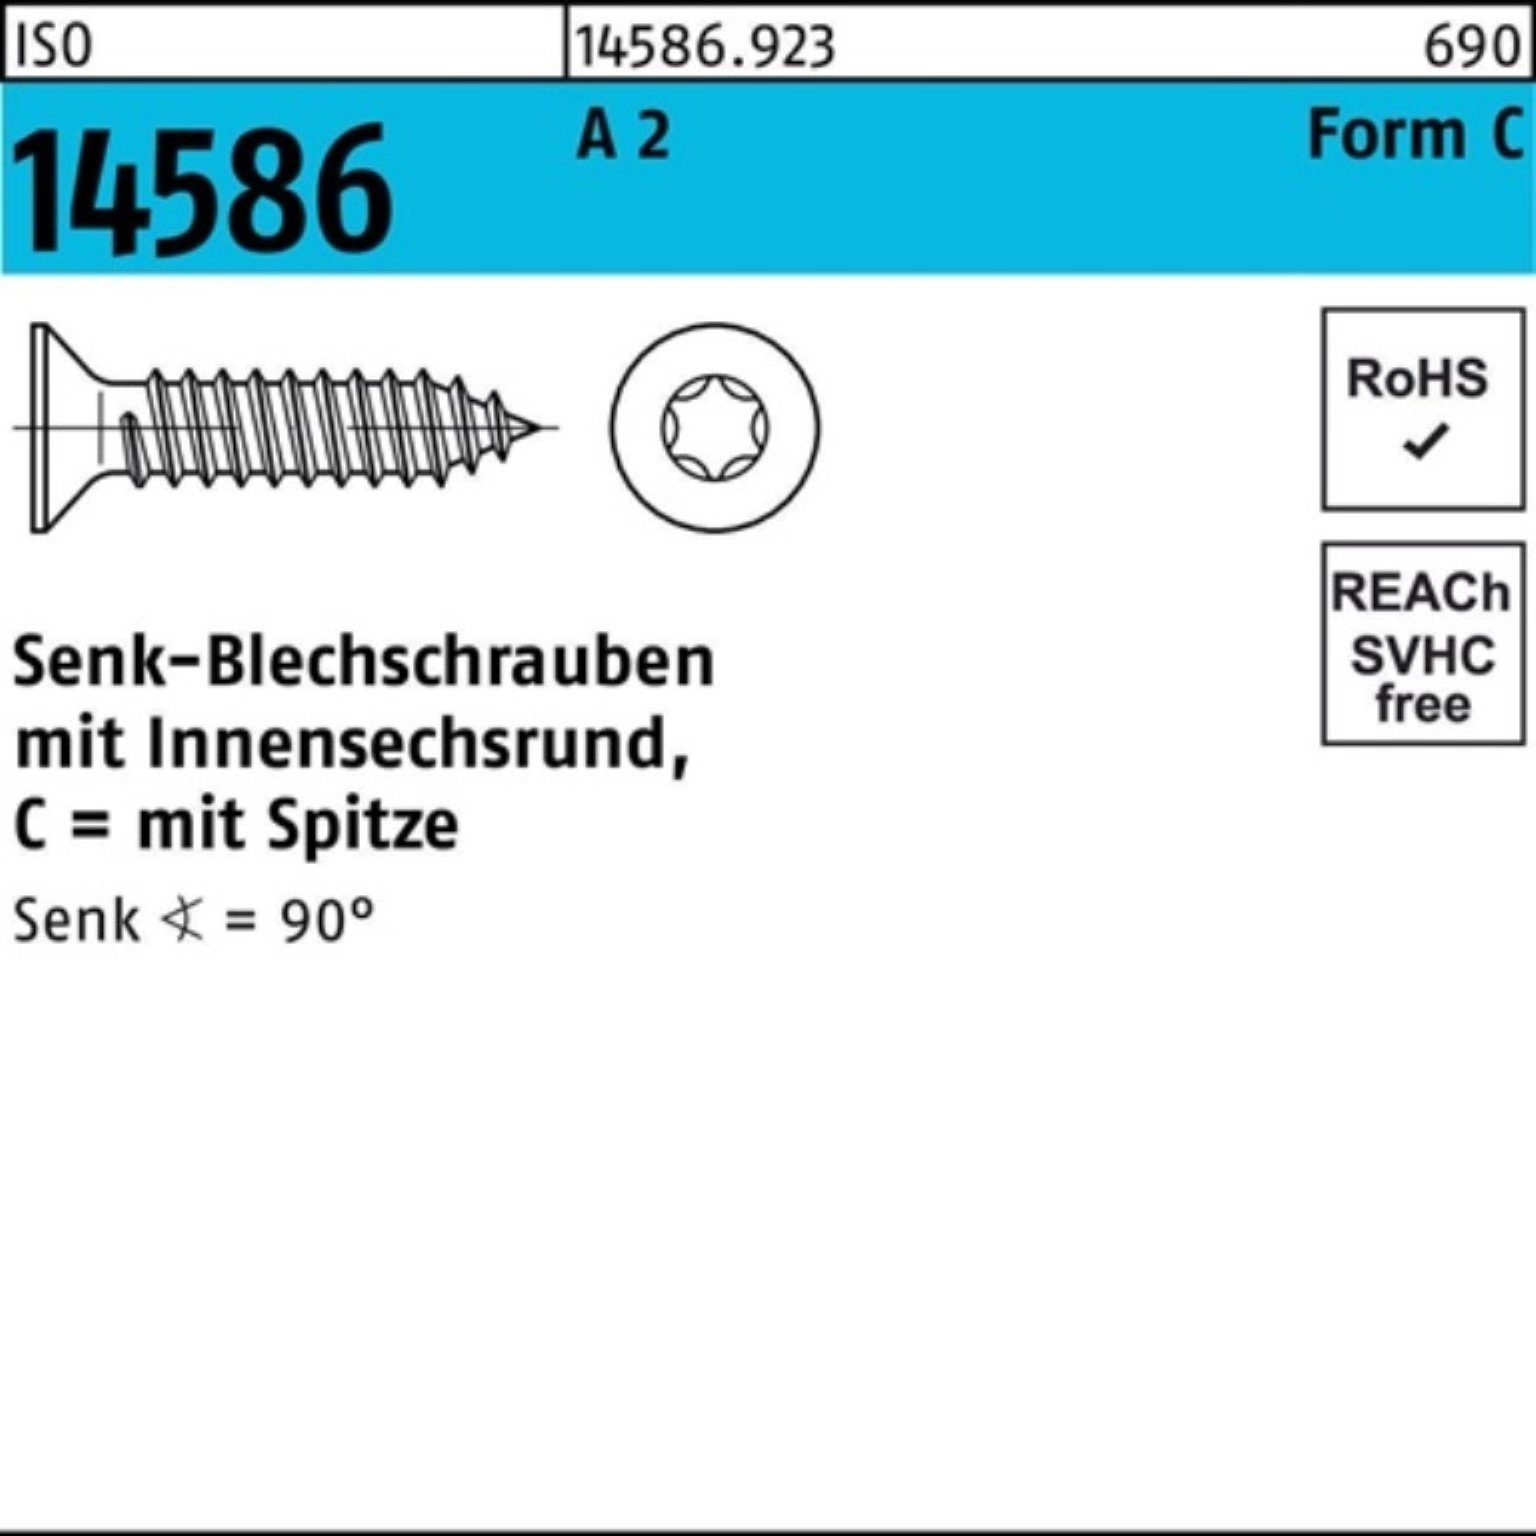 Reyher Schraube 500er ISR/Spitze 3,9x -C A T15 Senkblechschraube 14586 2 ISO Pack 5 22